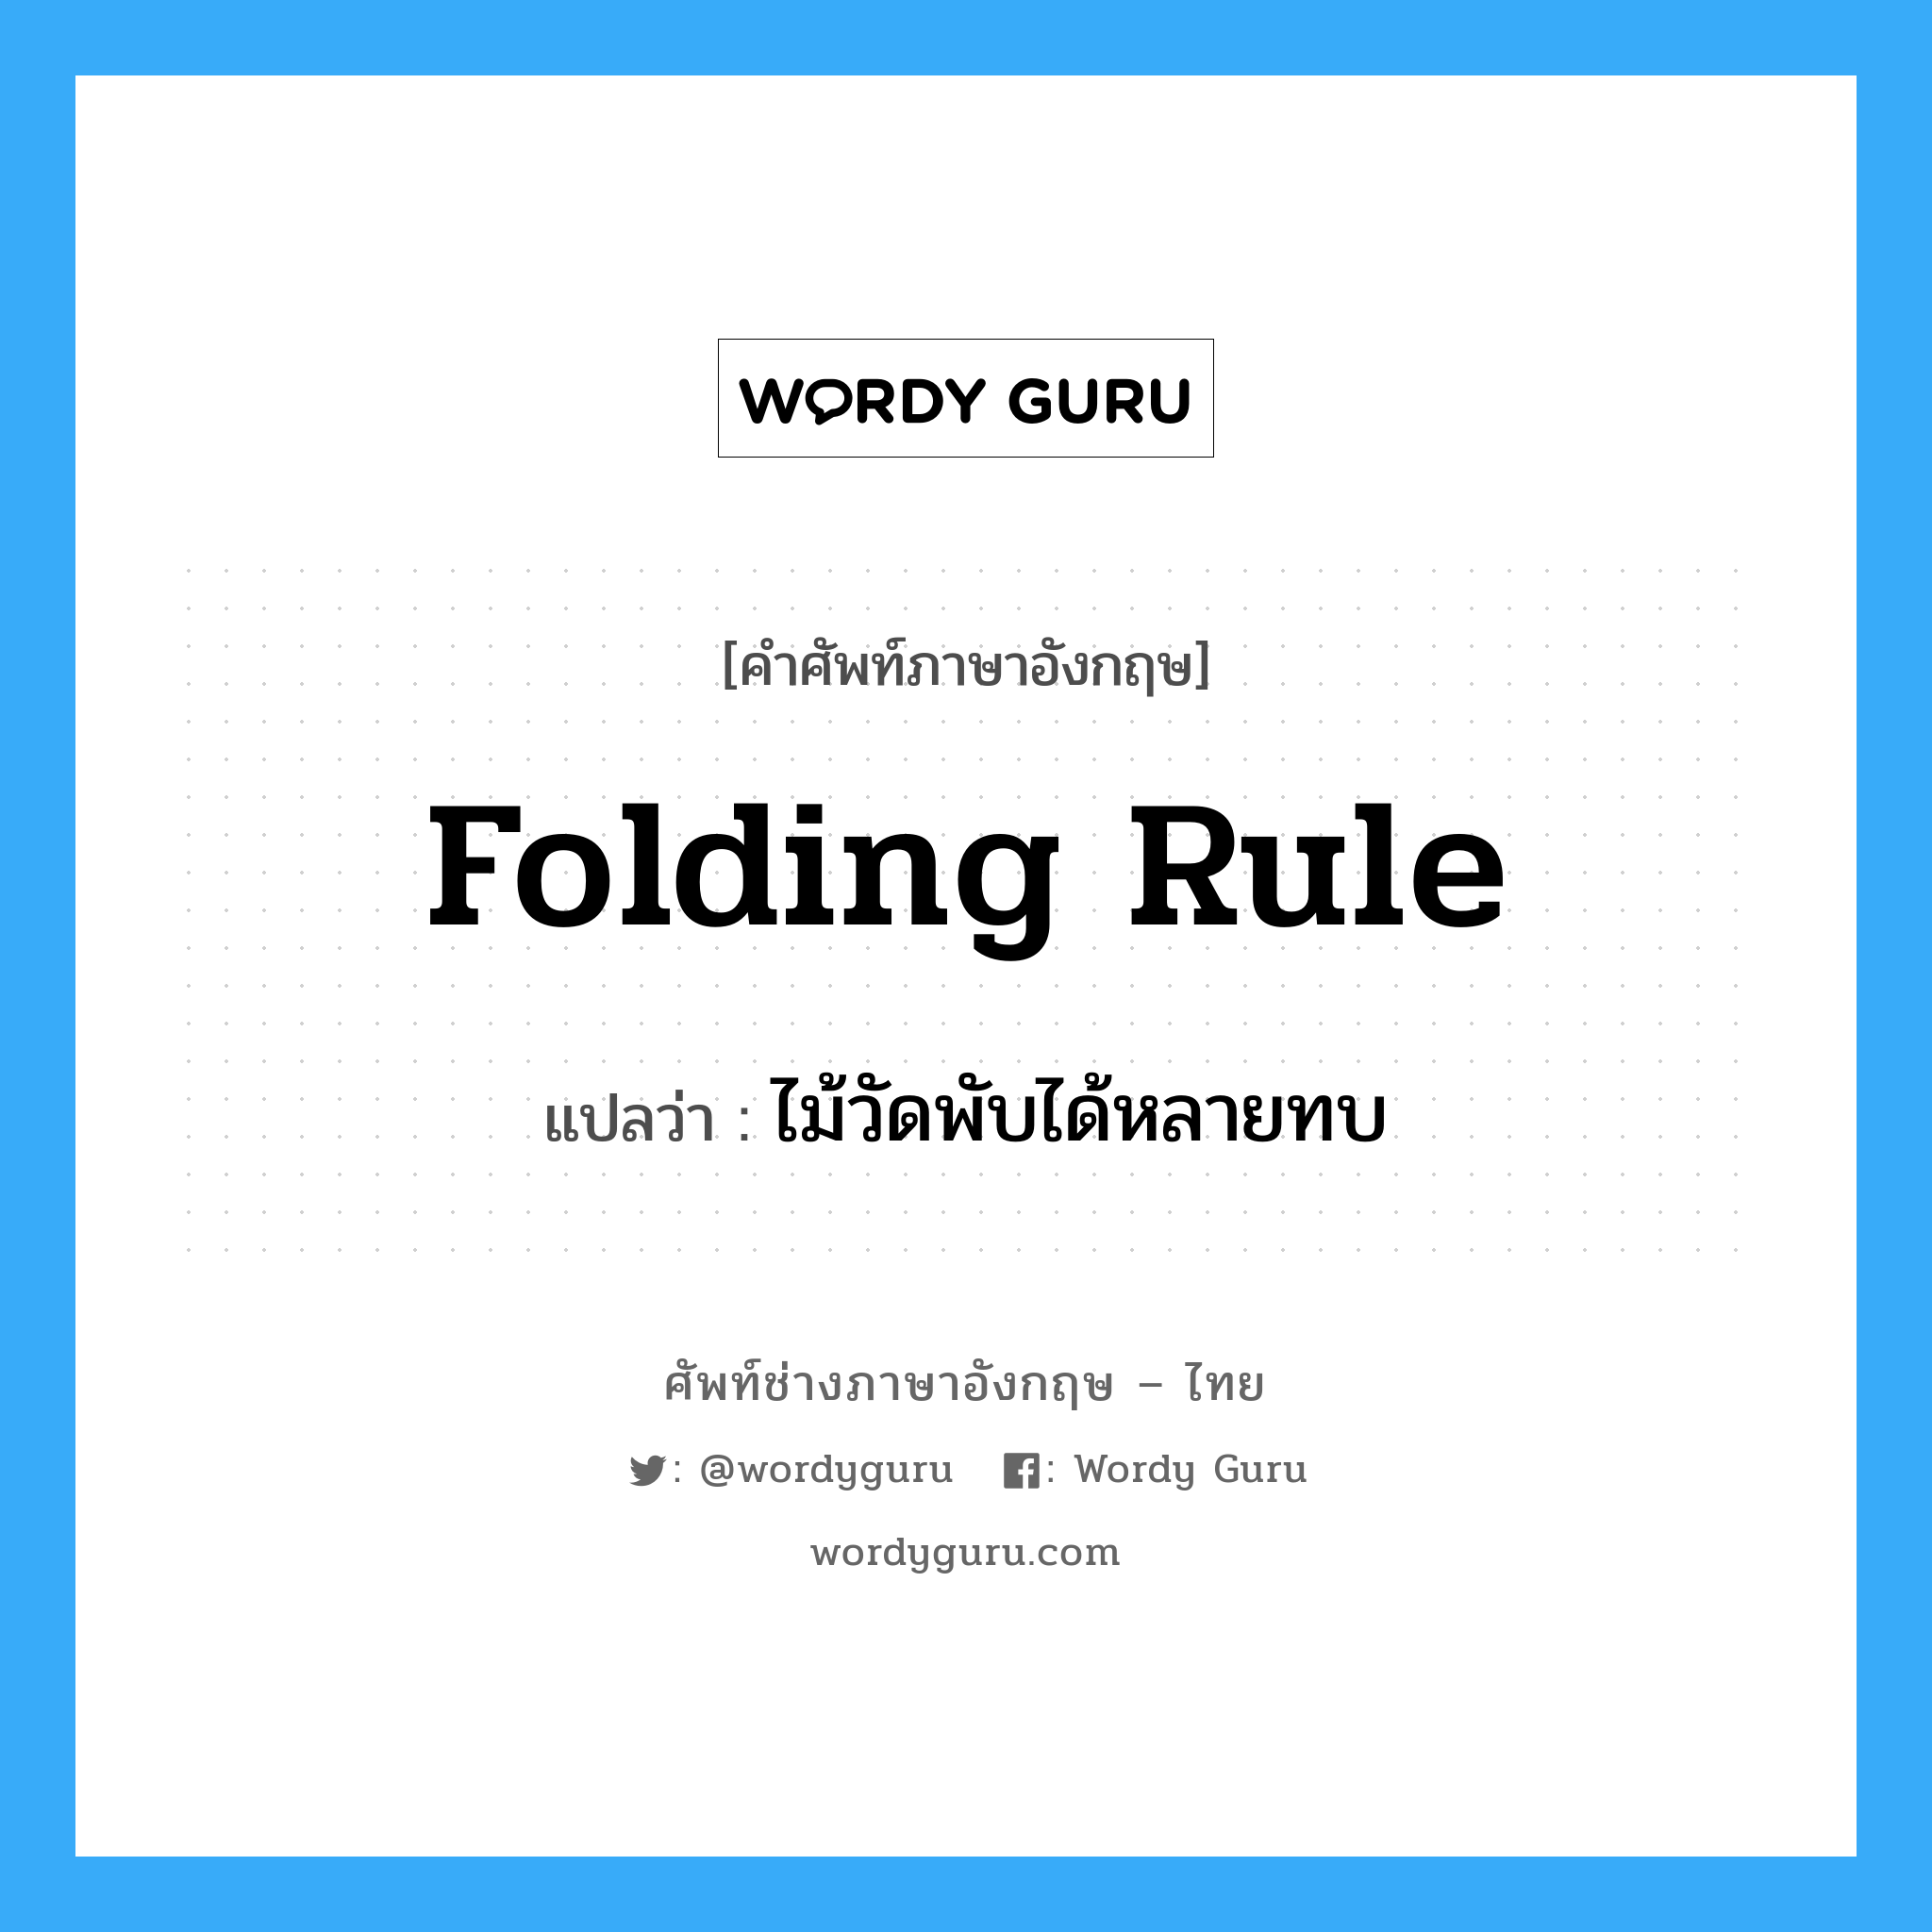 folding-rule แปลว่า?, คำศัพท์ช่างภาษาอังกฤษ - ไทย folding rule คำศัพท์ภาษาอังกฤษ folding rule แปลว่า ไม้วัดพับได้หลายทบ